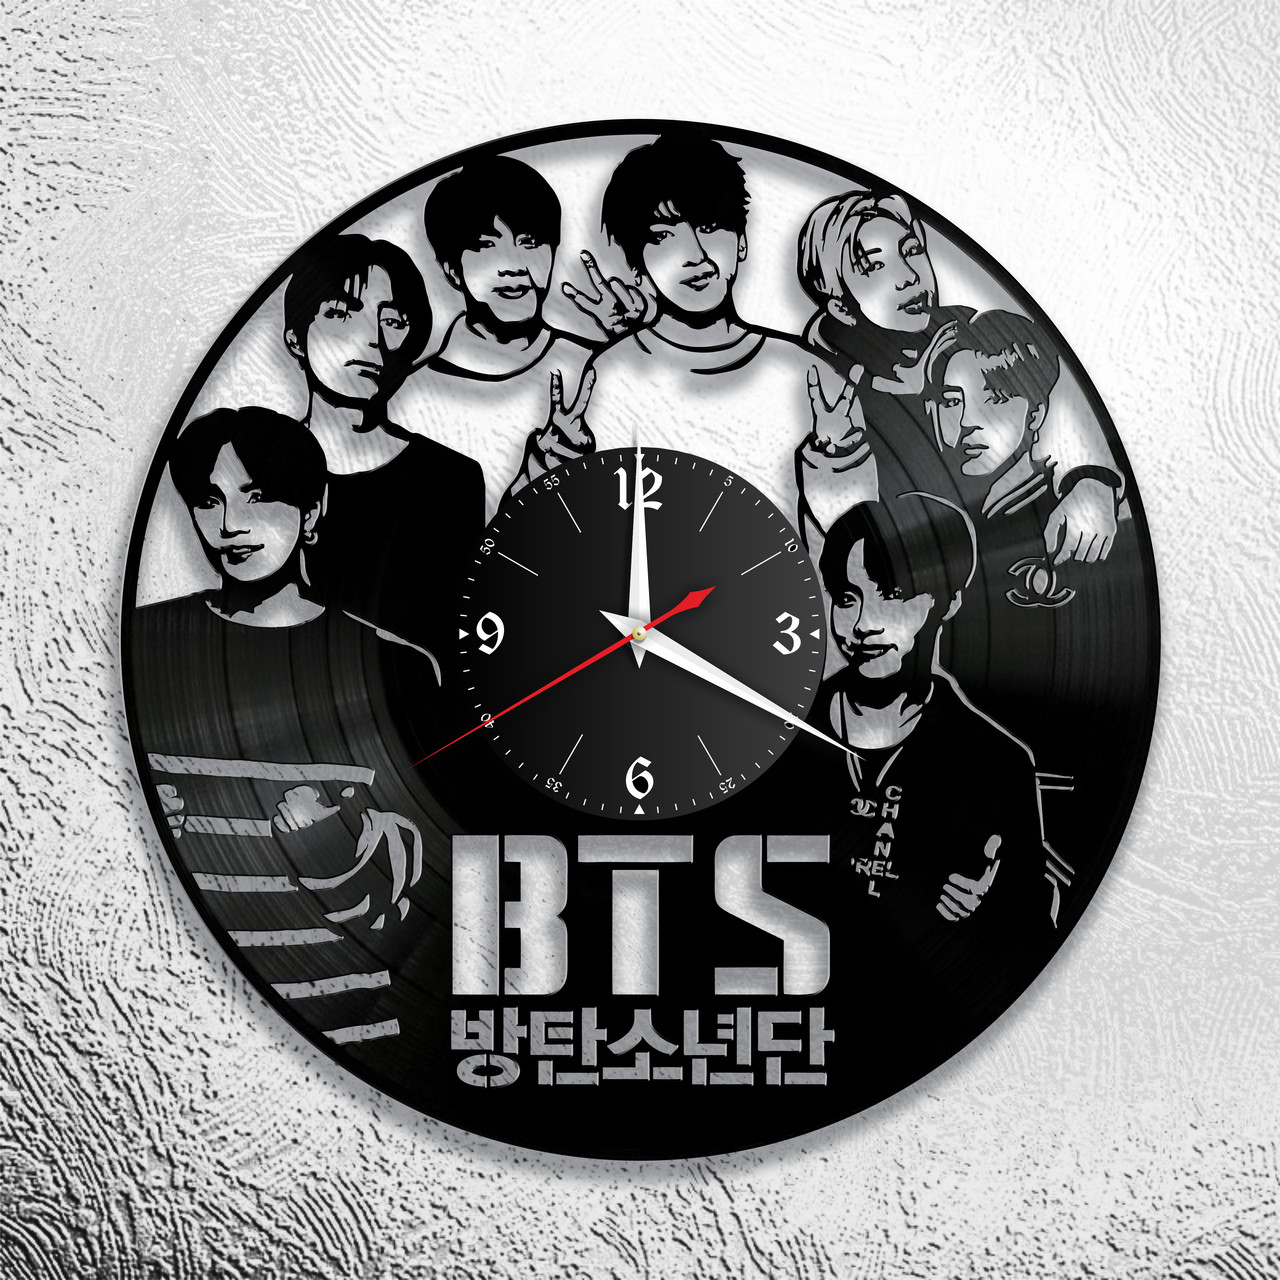 Оригинальные часы из виниловых пластинок "BTS" версия 2